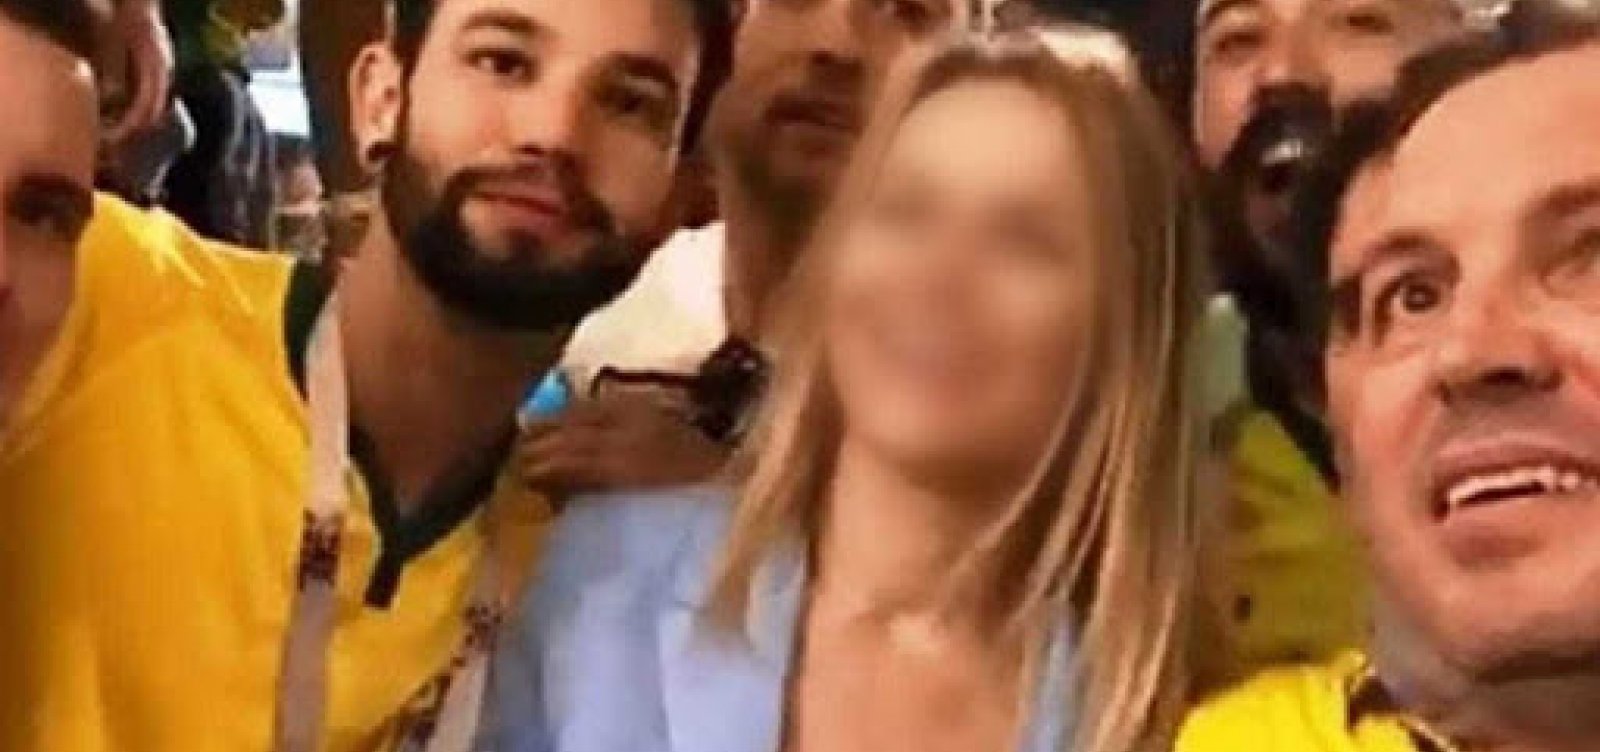 MPF investigará brasileiros que desrespeitaram mulher na Rússia e divulgaram vídeo